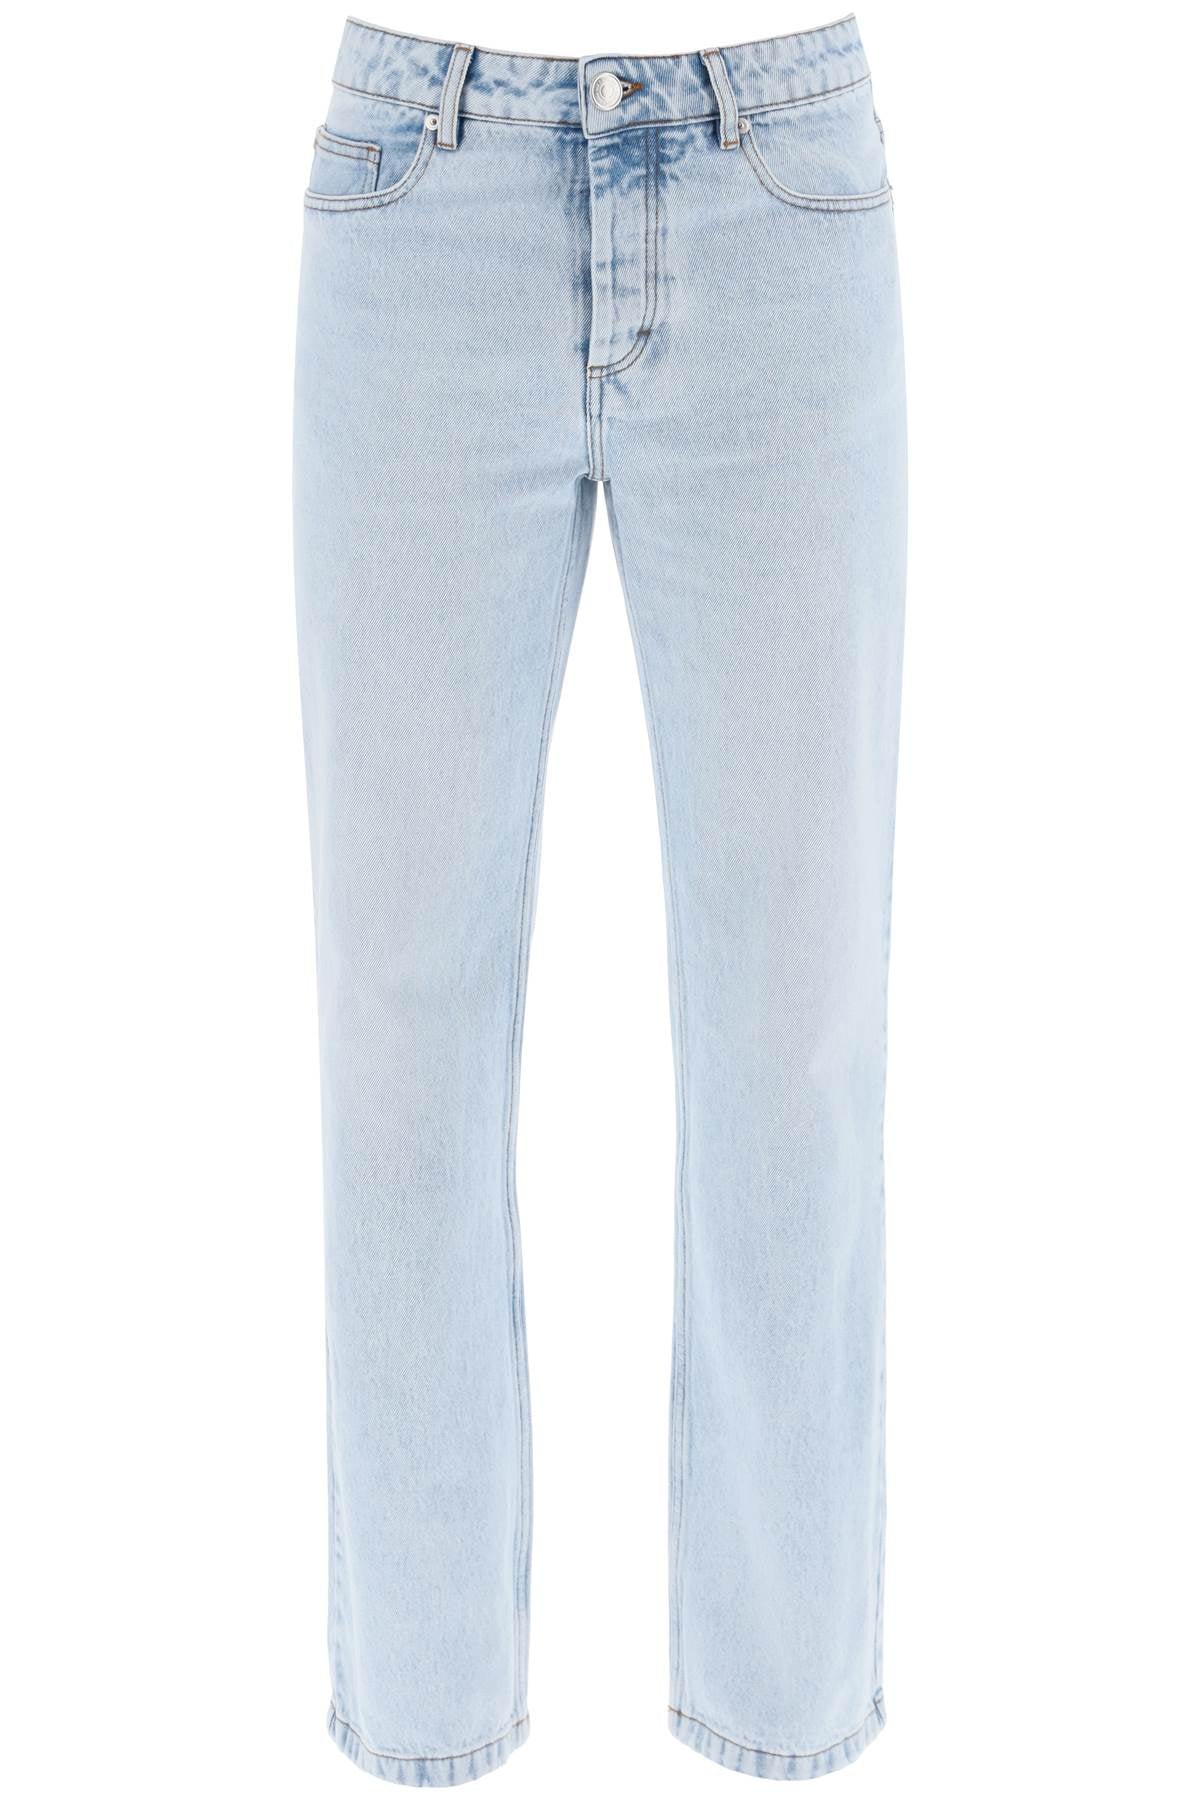 Ami paris fit

straight fit jeans-0